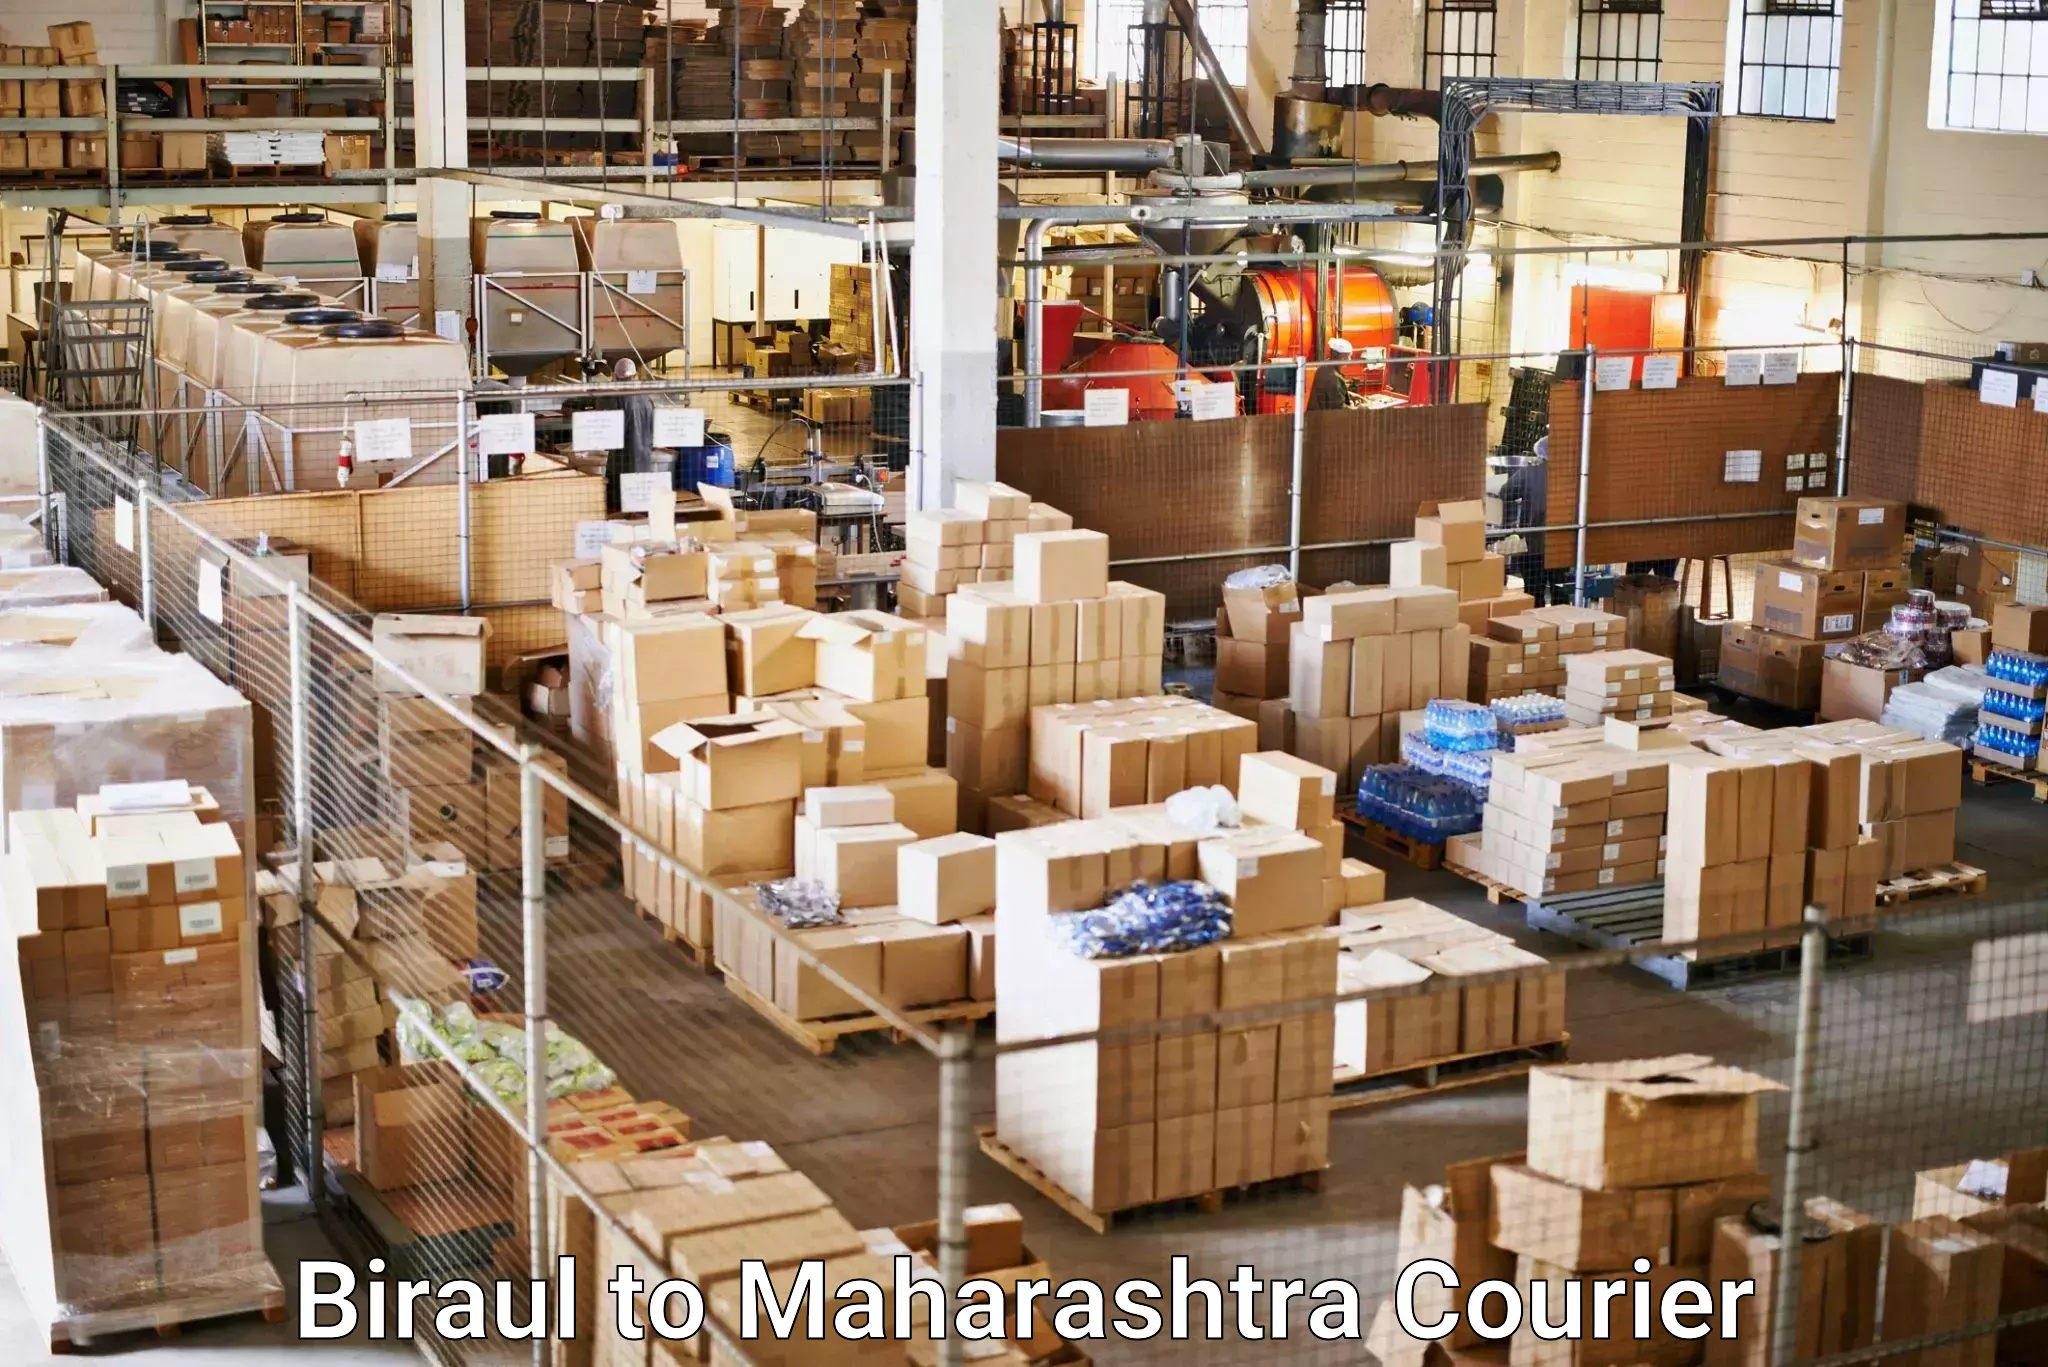 Courier service comparison Biraul to Gangapur Aurangabad